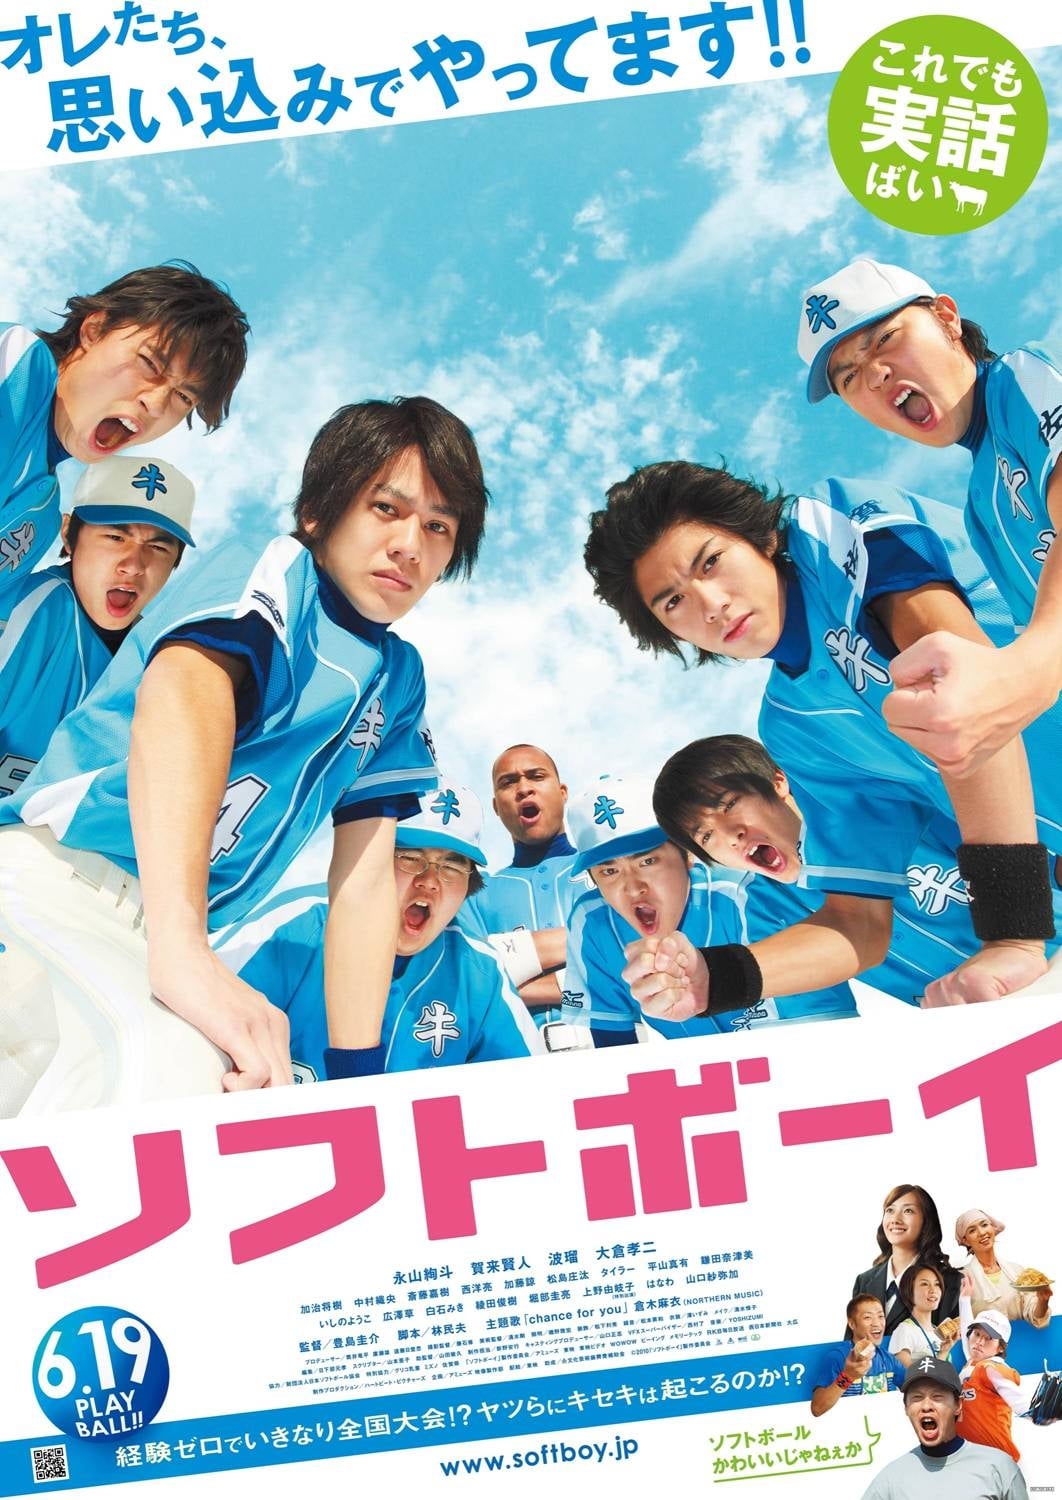 Softball Boys (2010)